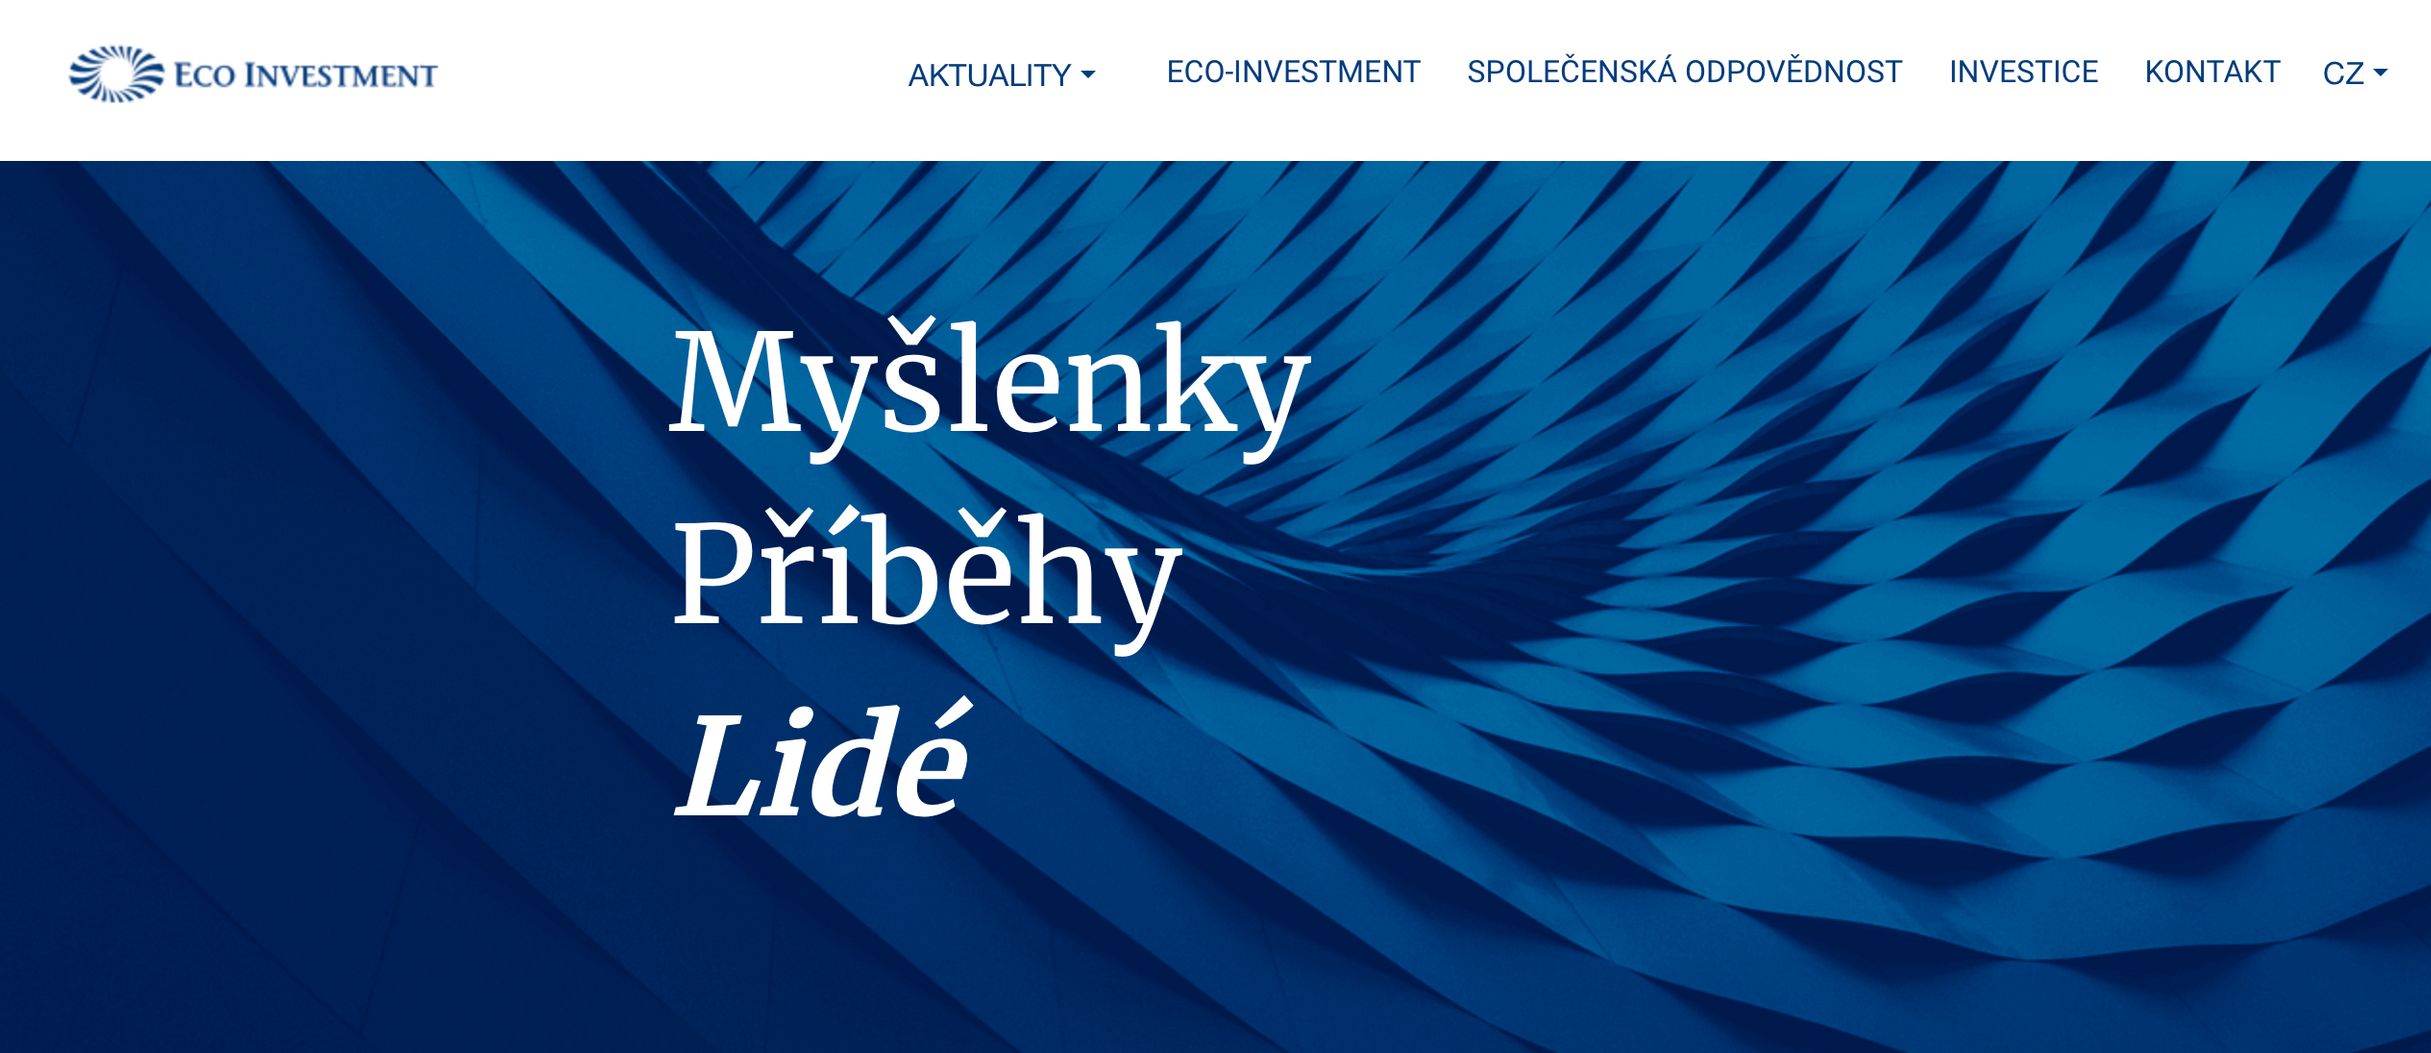 Web společnosti Eco-Investment, kterou vlastní původem slovenský miliardář Milan Fiľo.